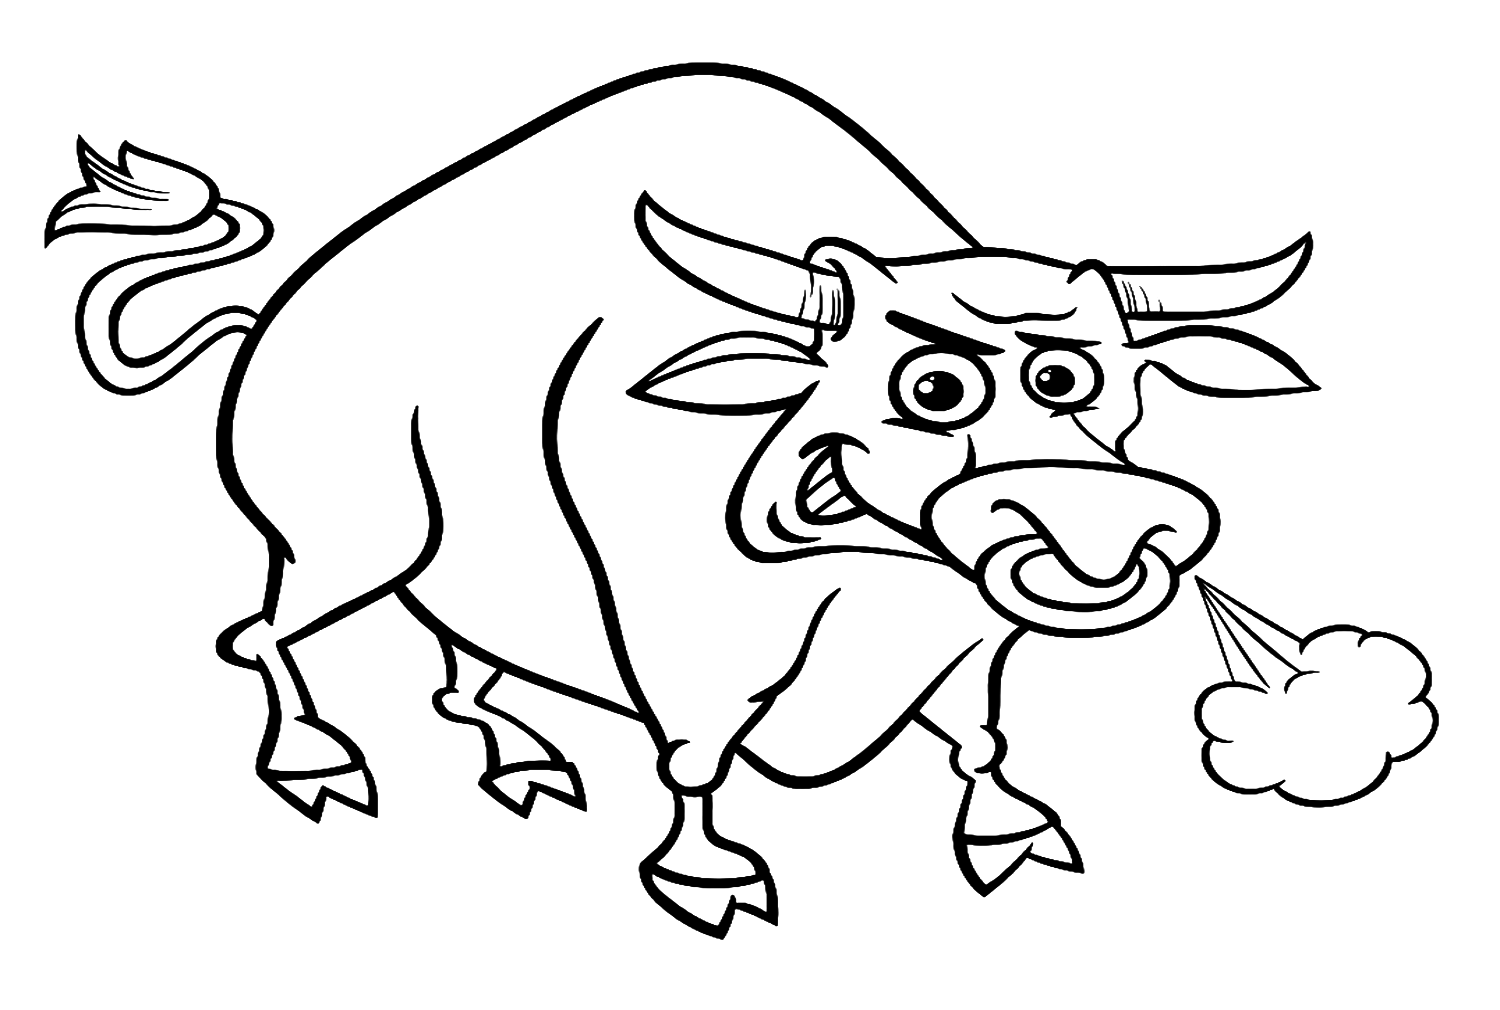 Toro arrabbiato del fumetto da Bull